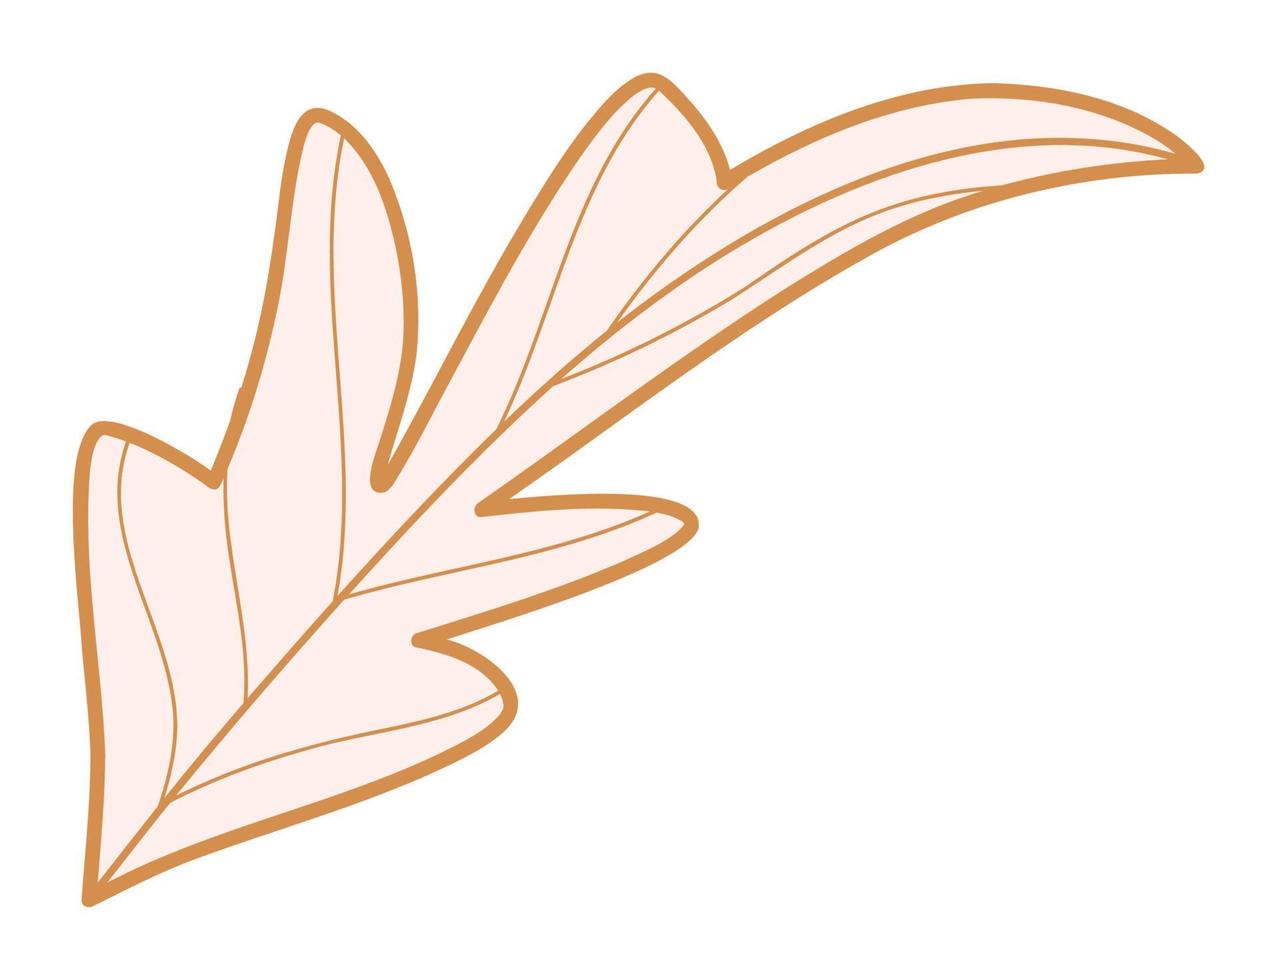 silueta de hoja de amapola. Ilustración de vector de elemento de diseño de hojas de planta